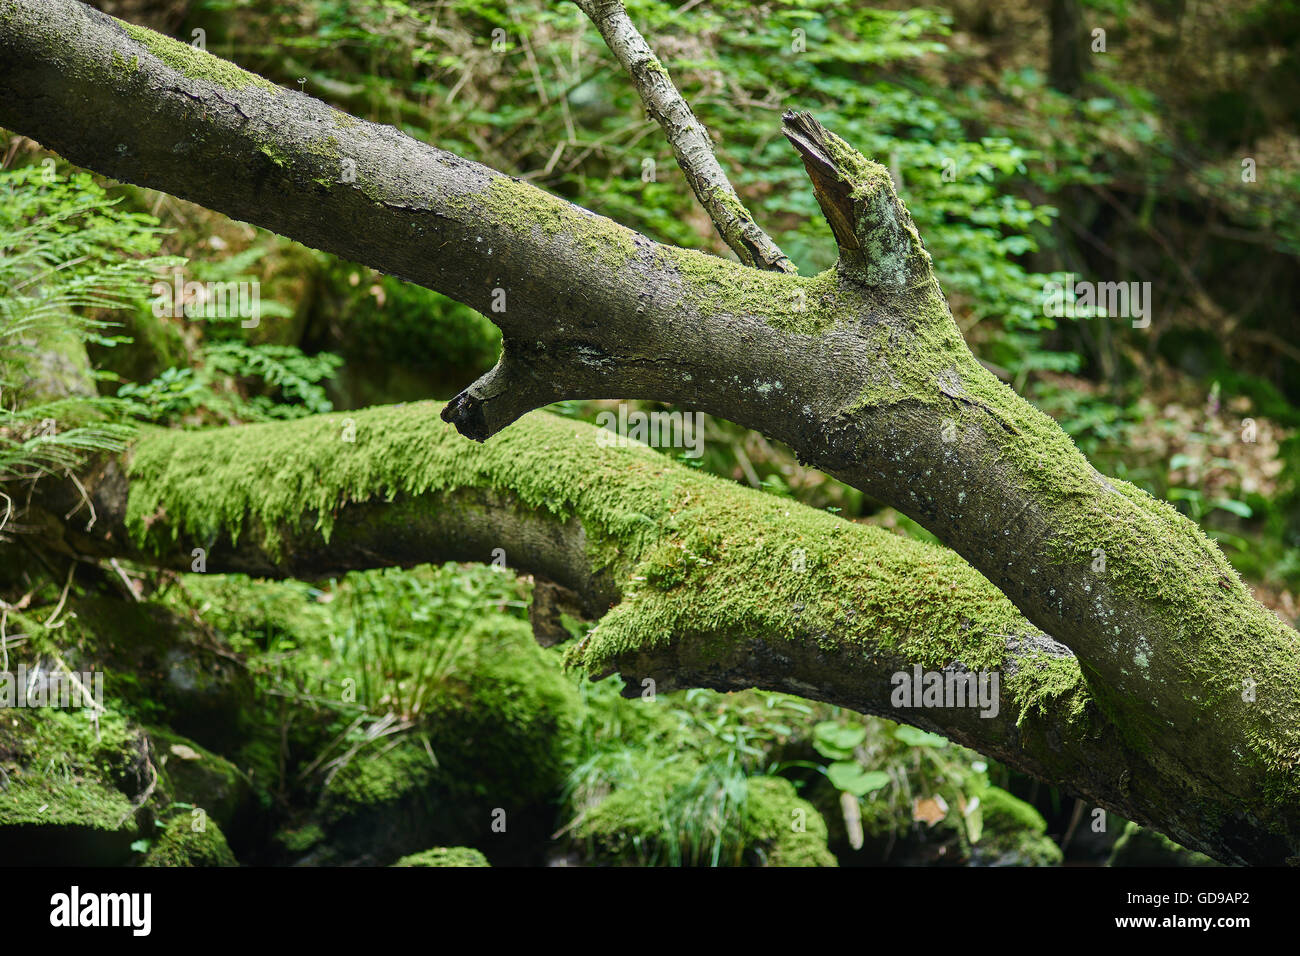 Gebirgsfluss in sommergrün bemoosten Steinen gefallen Baum fließendes Wasser Stockfoto